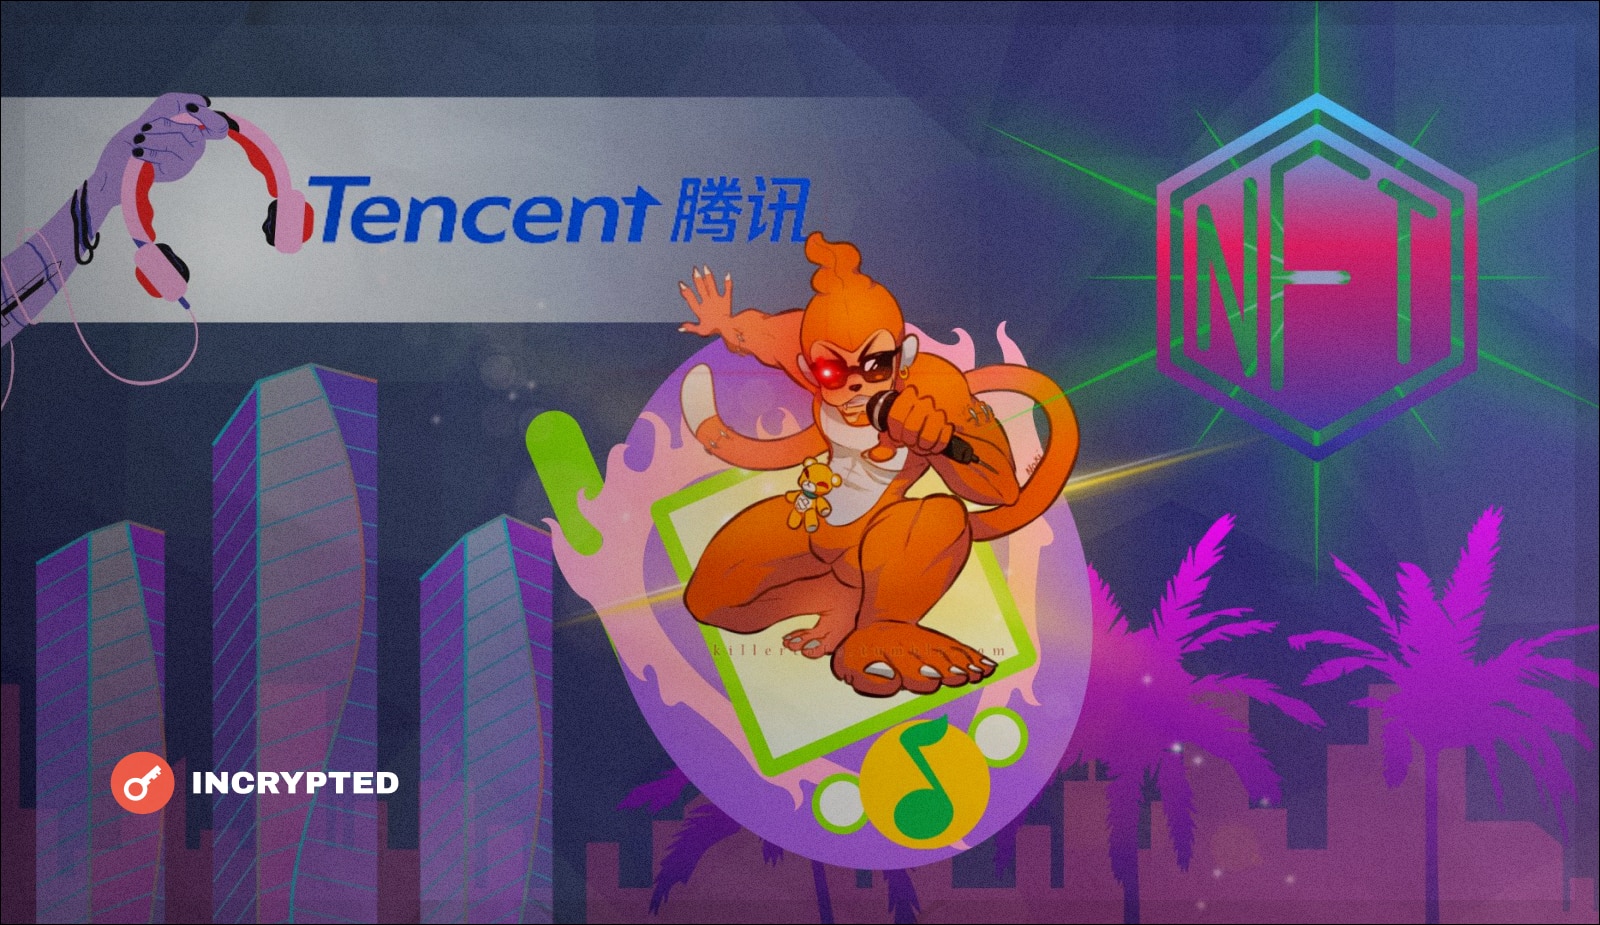 В музыкальном приложении Tencent появились NFT-аватарки и виртуальная студия. Заглавный коллаж новости.